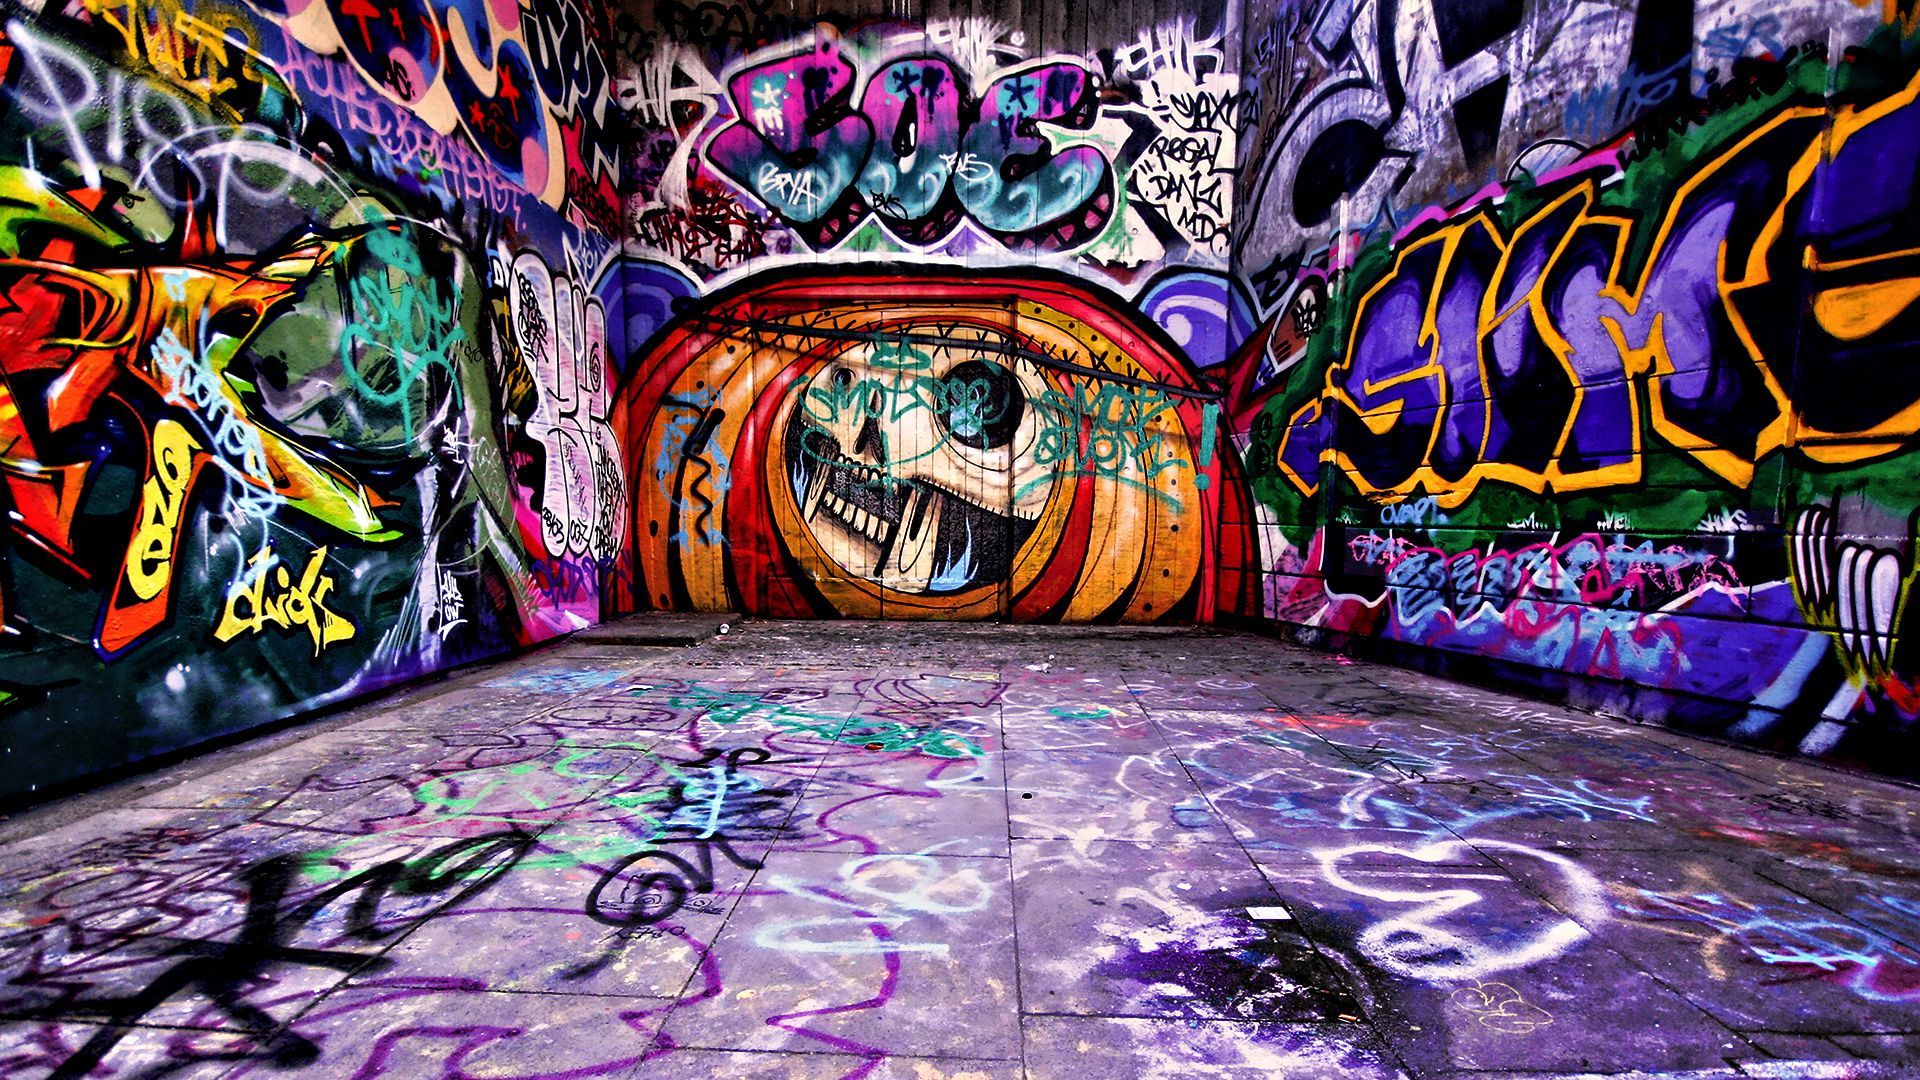 Graffiti Art Images | hd en 2019 | Graffiti fondo de pantalla, Graffiti